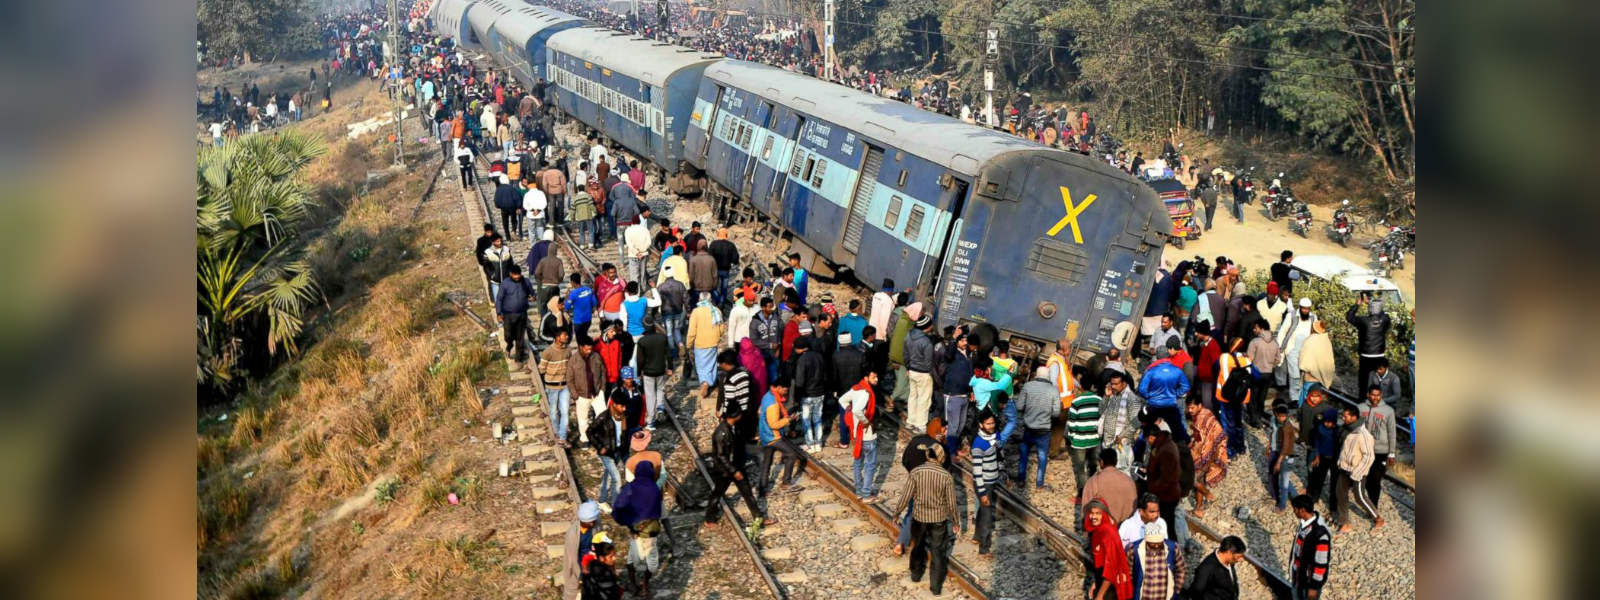 Train derails in India killing seven